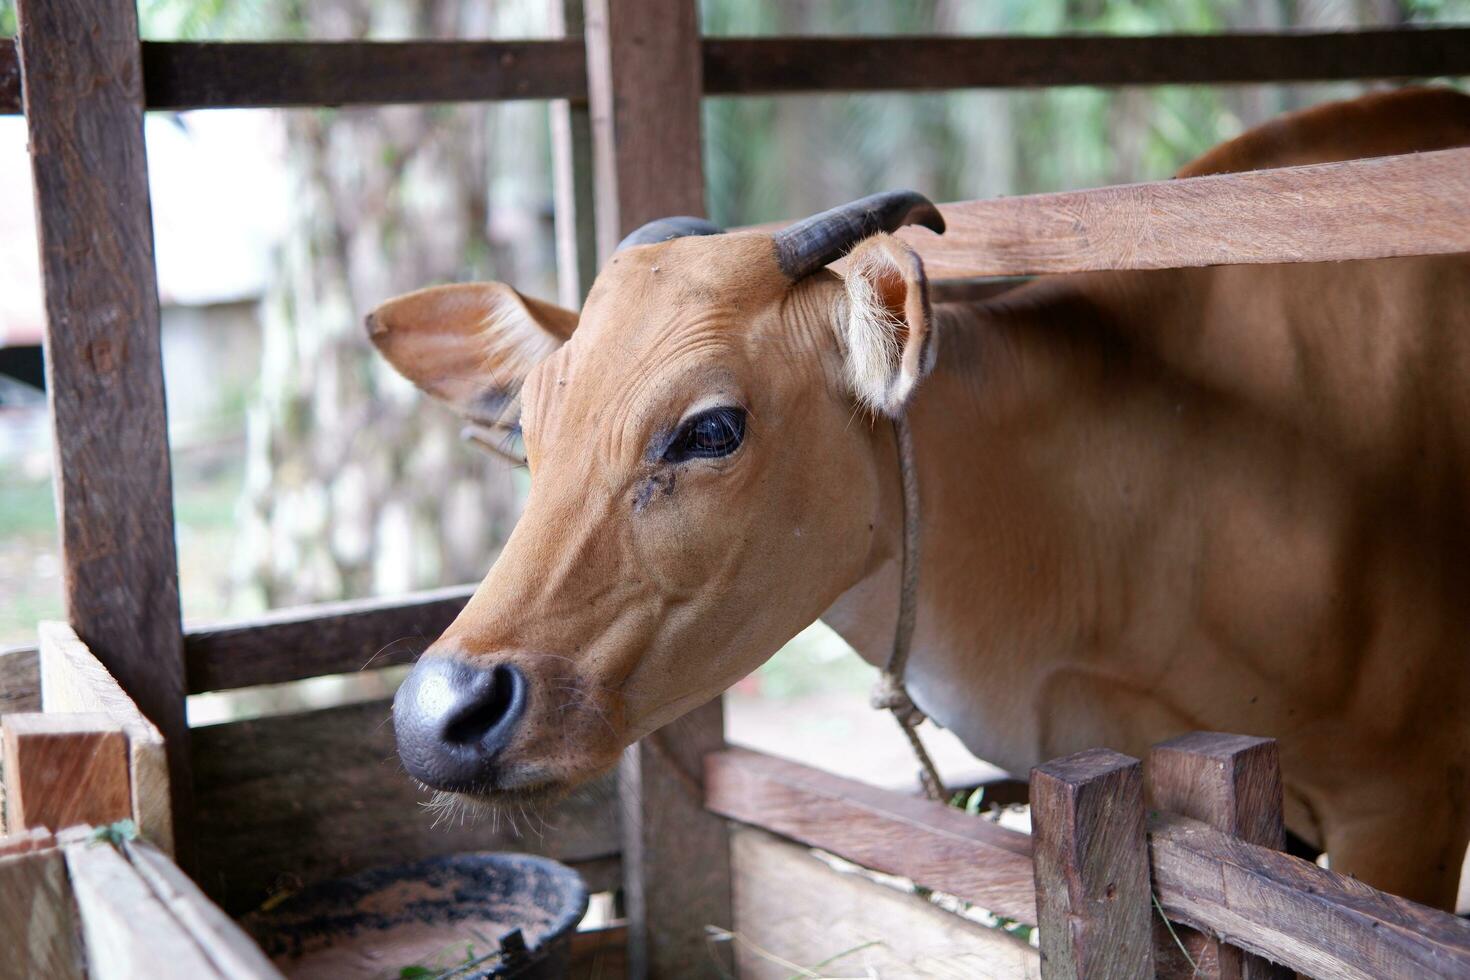 hoe veel vrouw Bali vee van Indonesië zijn in de pen foto